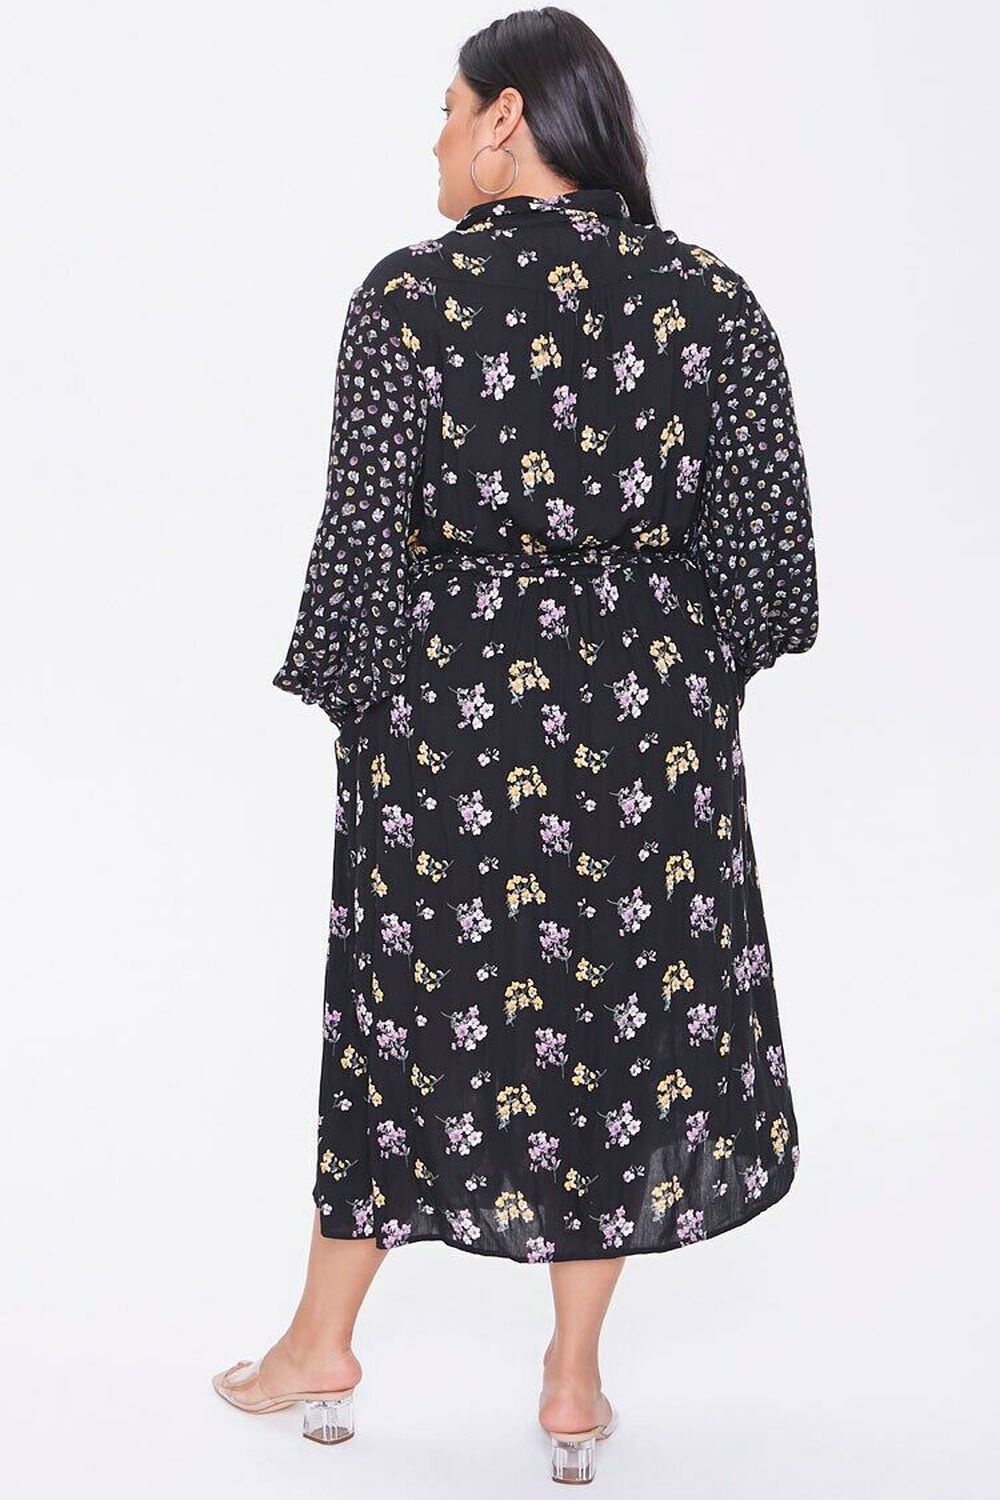 BLACK/MULTI Plus Size Floral Print Buttoned Dress, image 3